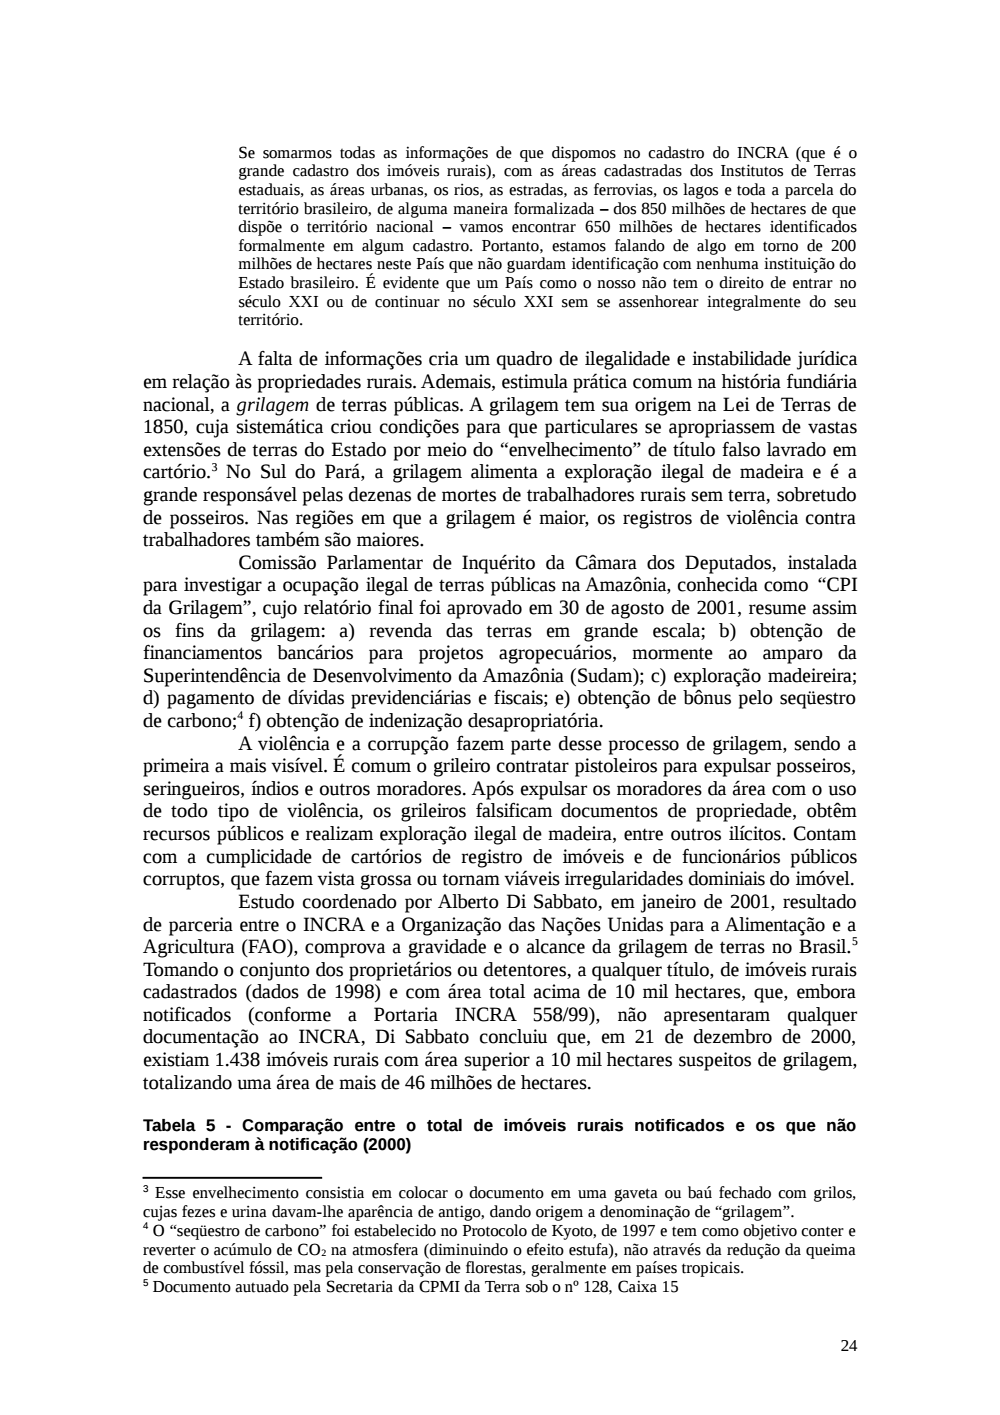 Page 24 from Relatório final da comissão